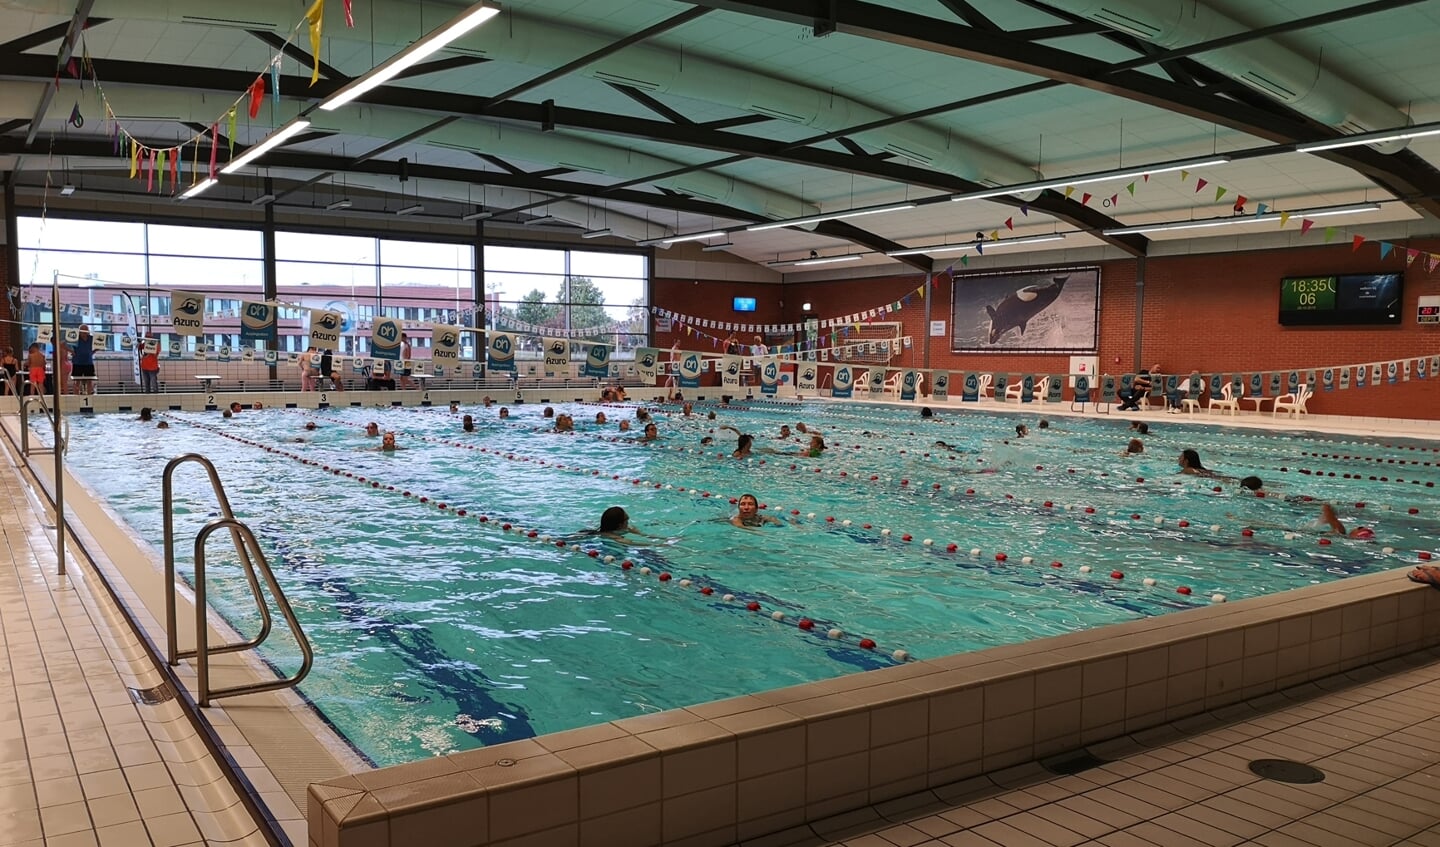 Zwembad Dubbelslag in Delfzijl is binnenkort weer het toneel van de zwem4daagse.